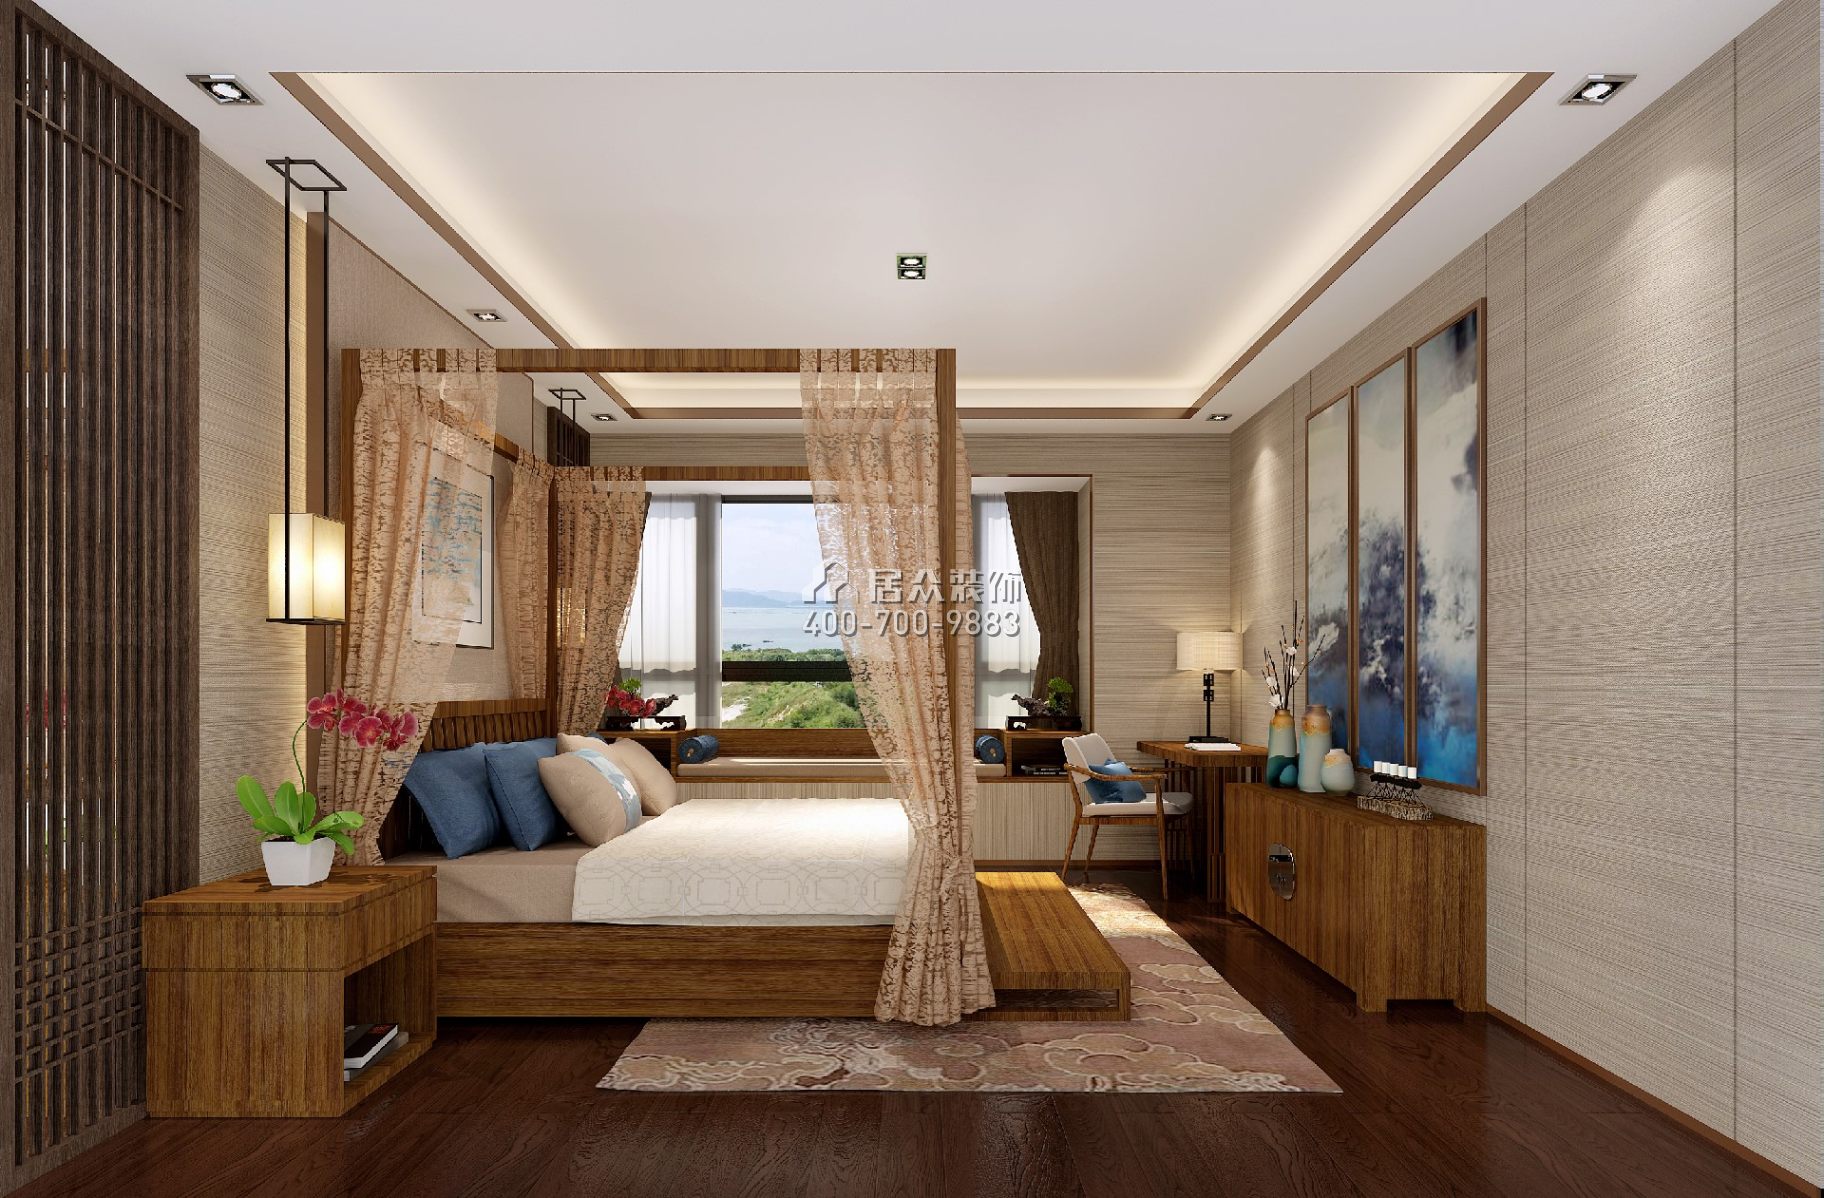 翡翠海岸花园186平方米中式风格平层户型卧室装修效果图